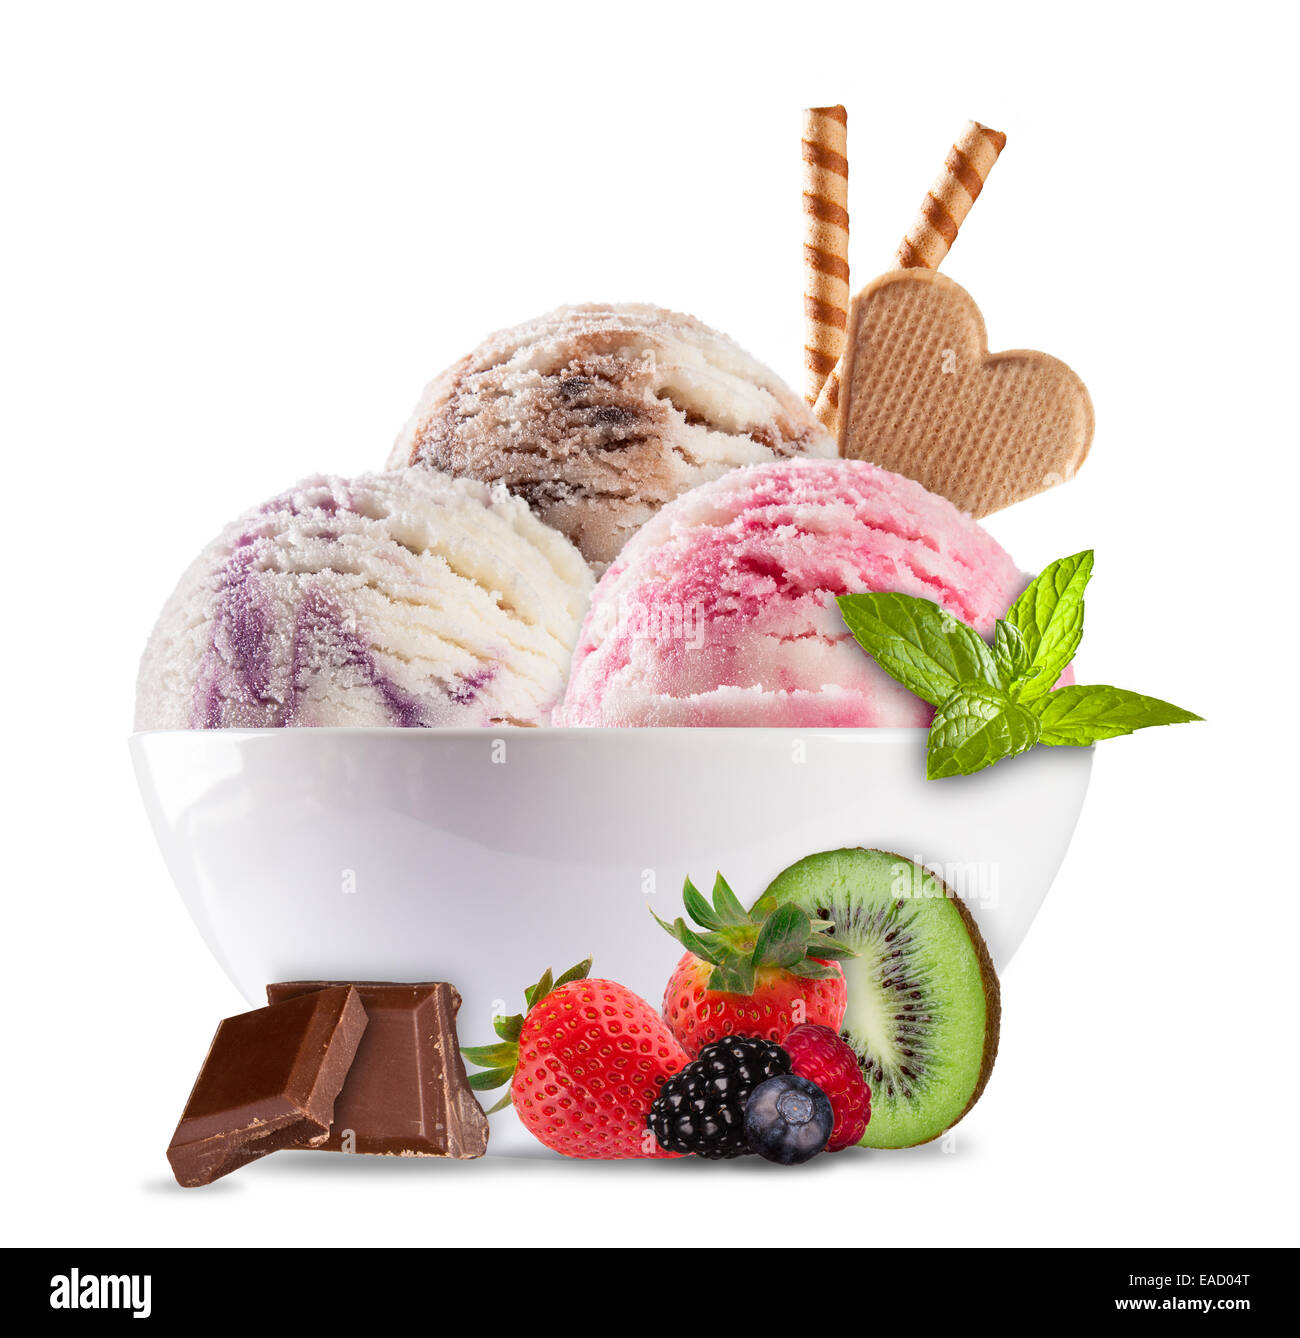 Foto de estudio de helado en un recipiente aislado sobre fondo blanco. Foto de stock